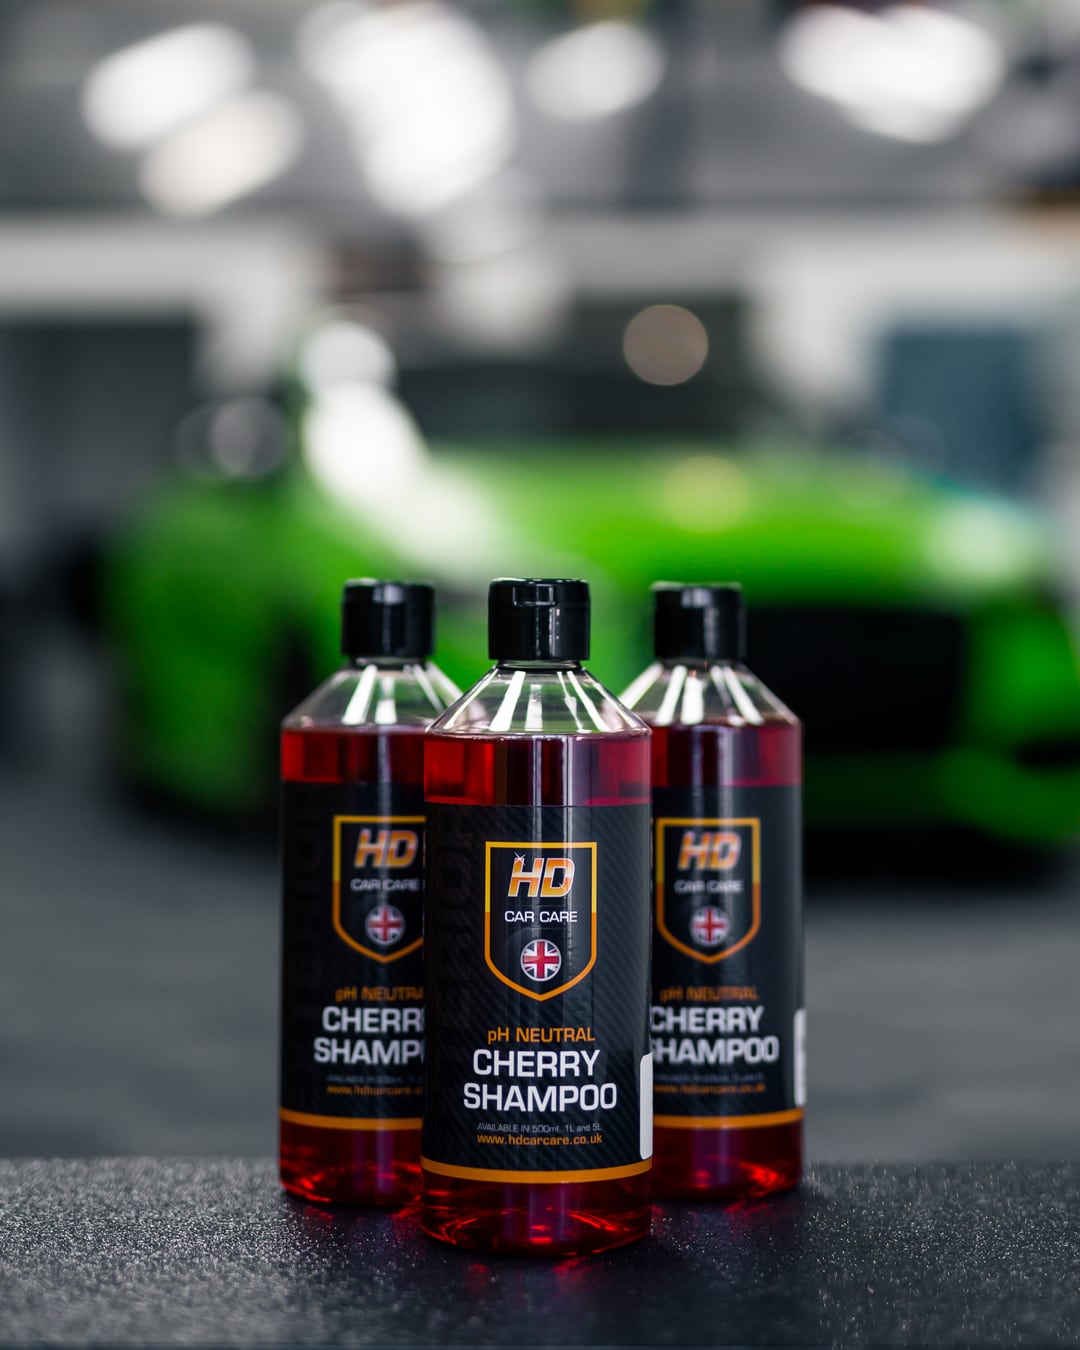 HD Car Care pH Neutral Cherry Shampoo